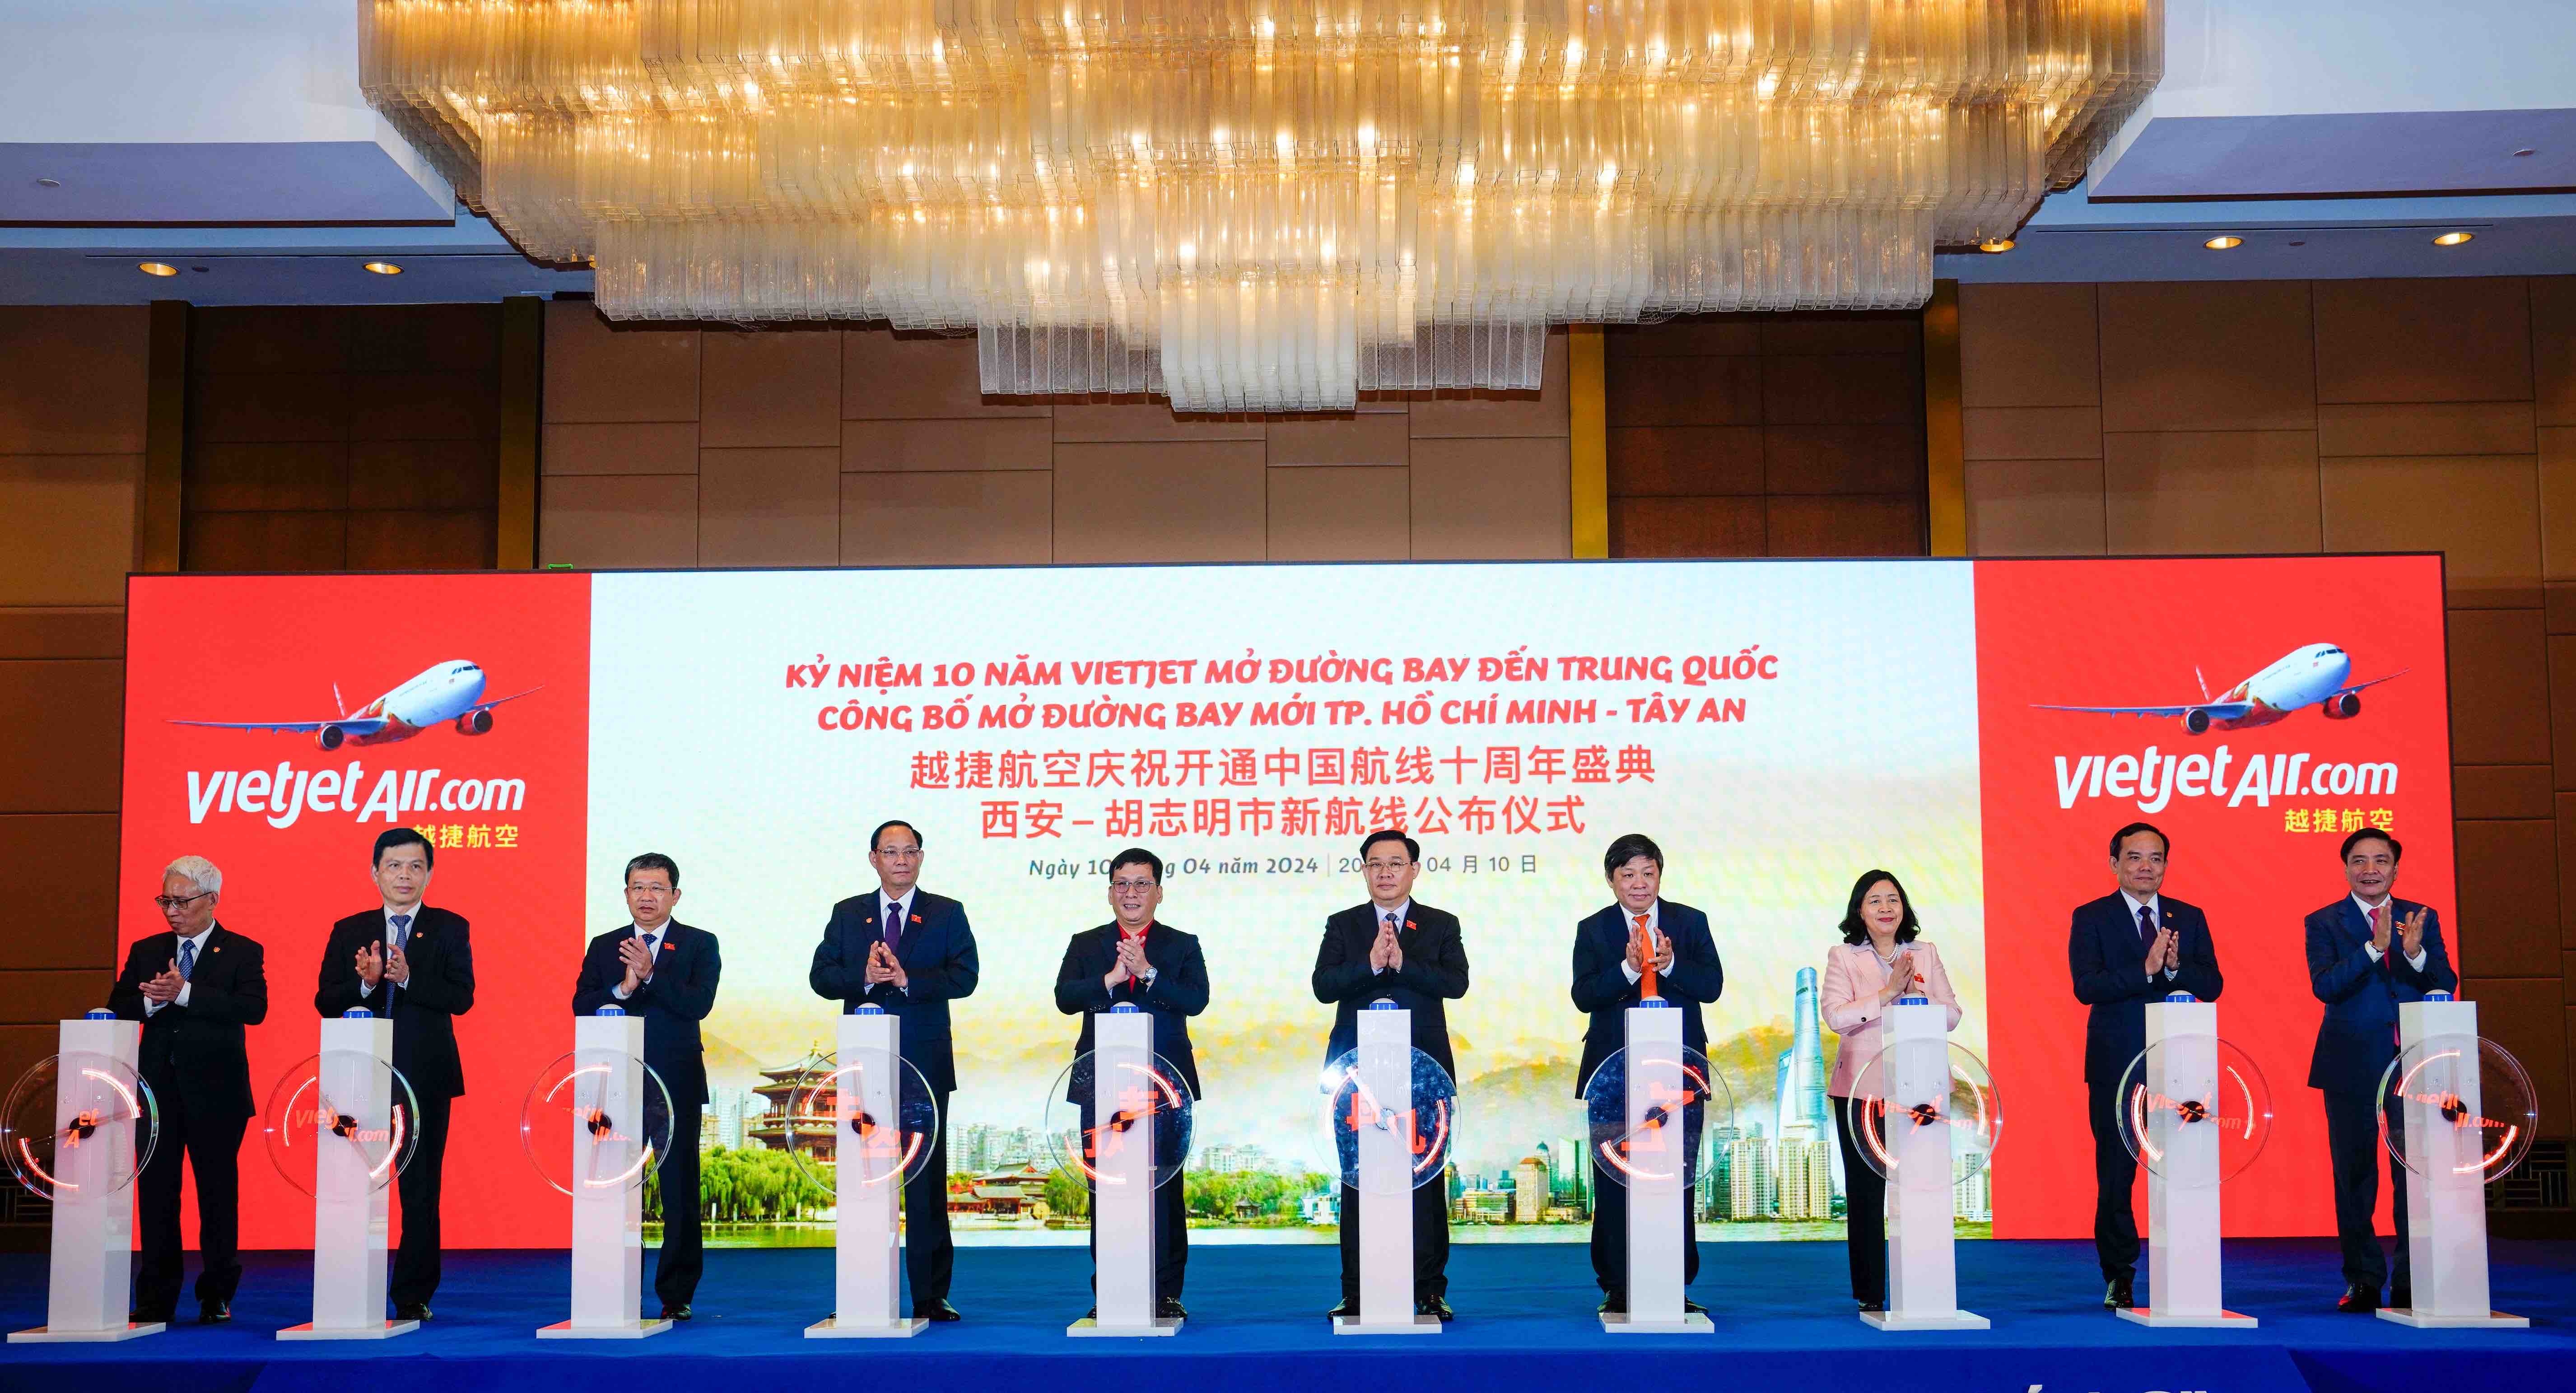 Nghi thức công bố đường bay mới TP. Hồ Chí Minh - Tây An (Trung Quốc) của Vietjet